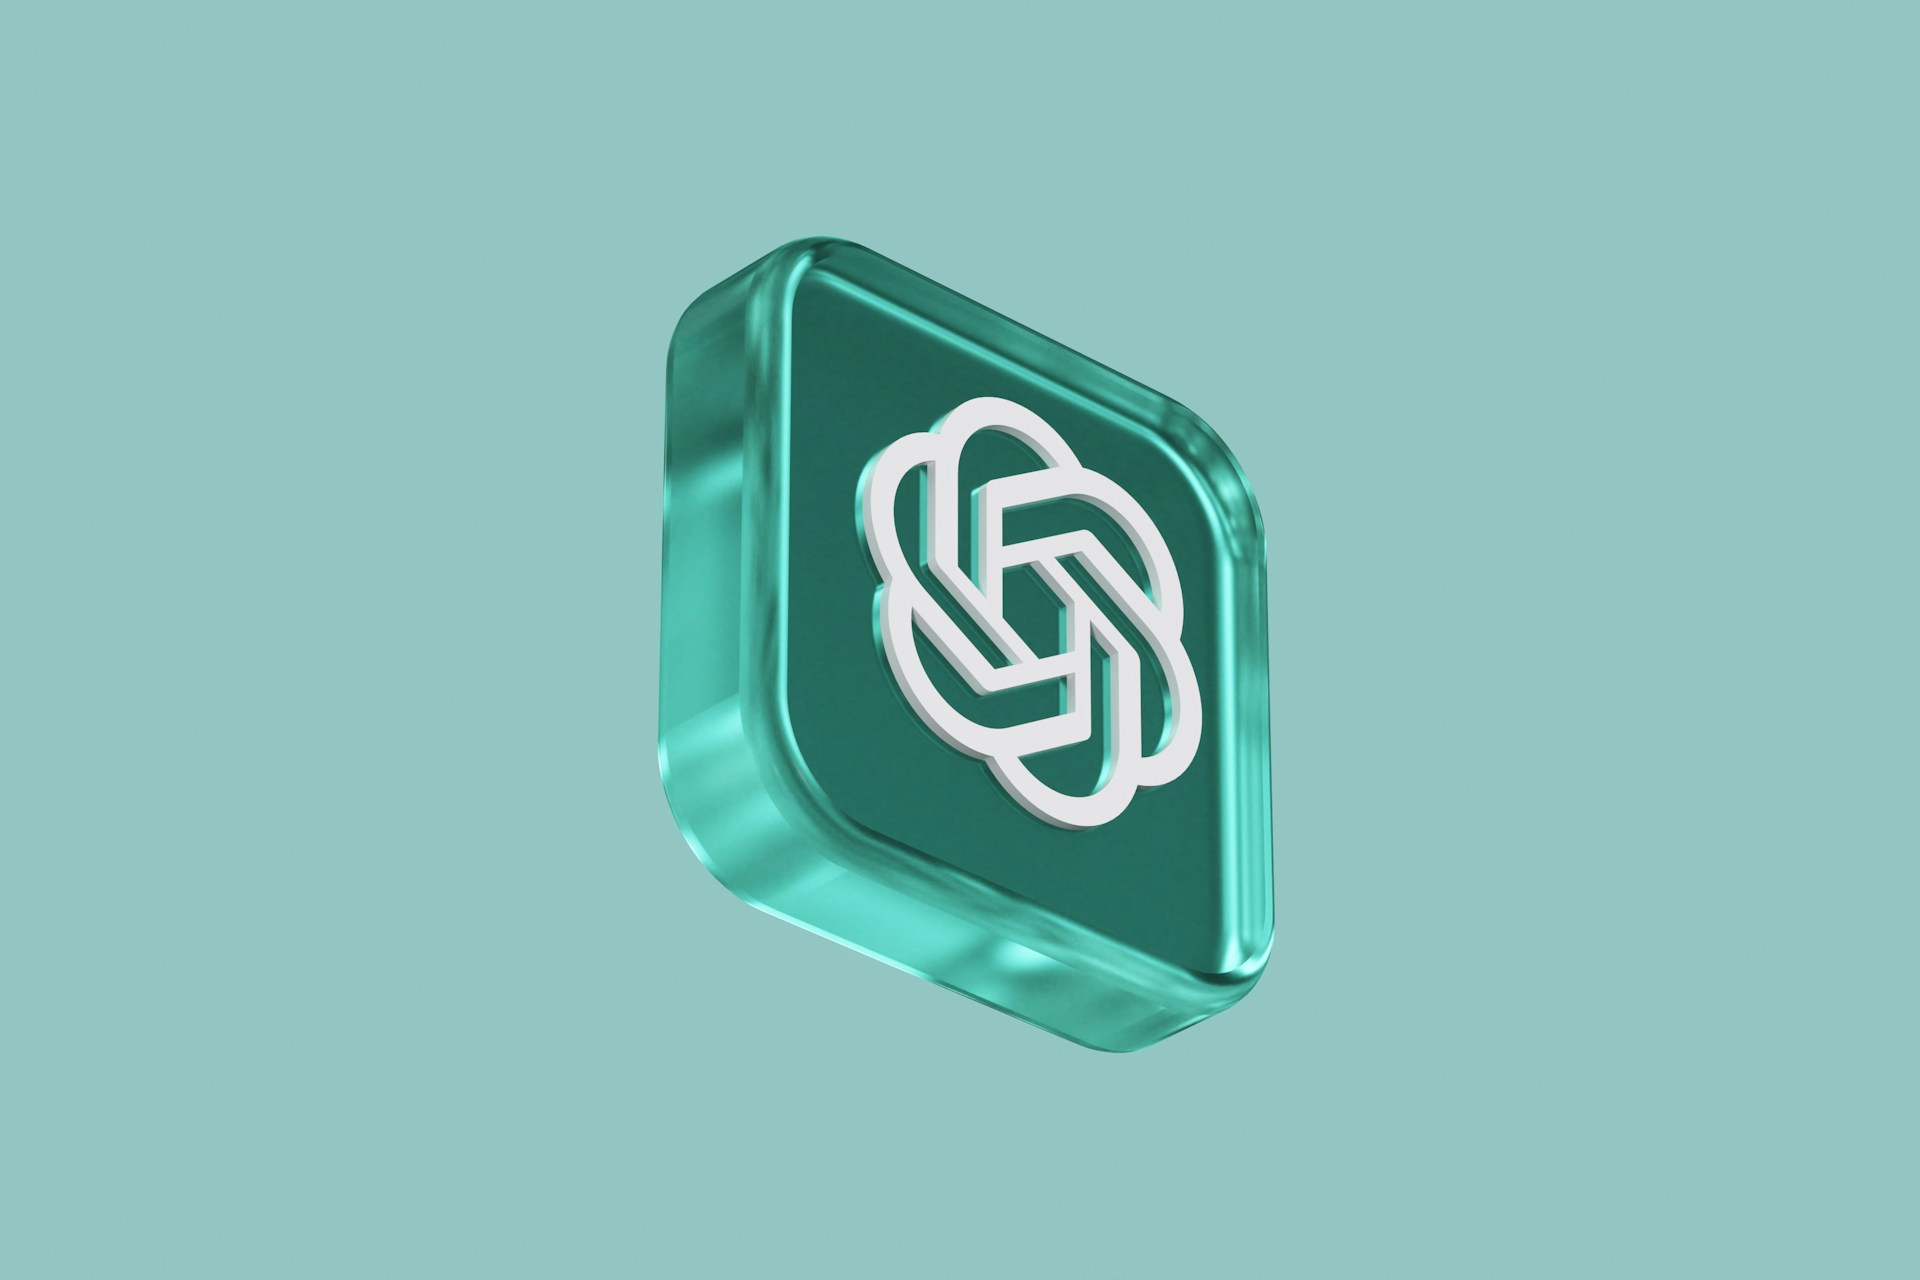 Un logo blanc chatgpt dans un carré vert aux coins arrondis tourné légérement vers la droite